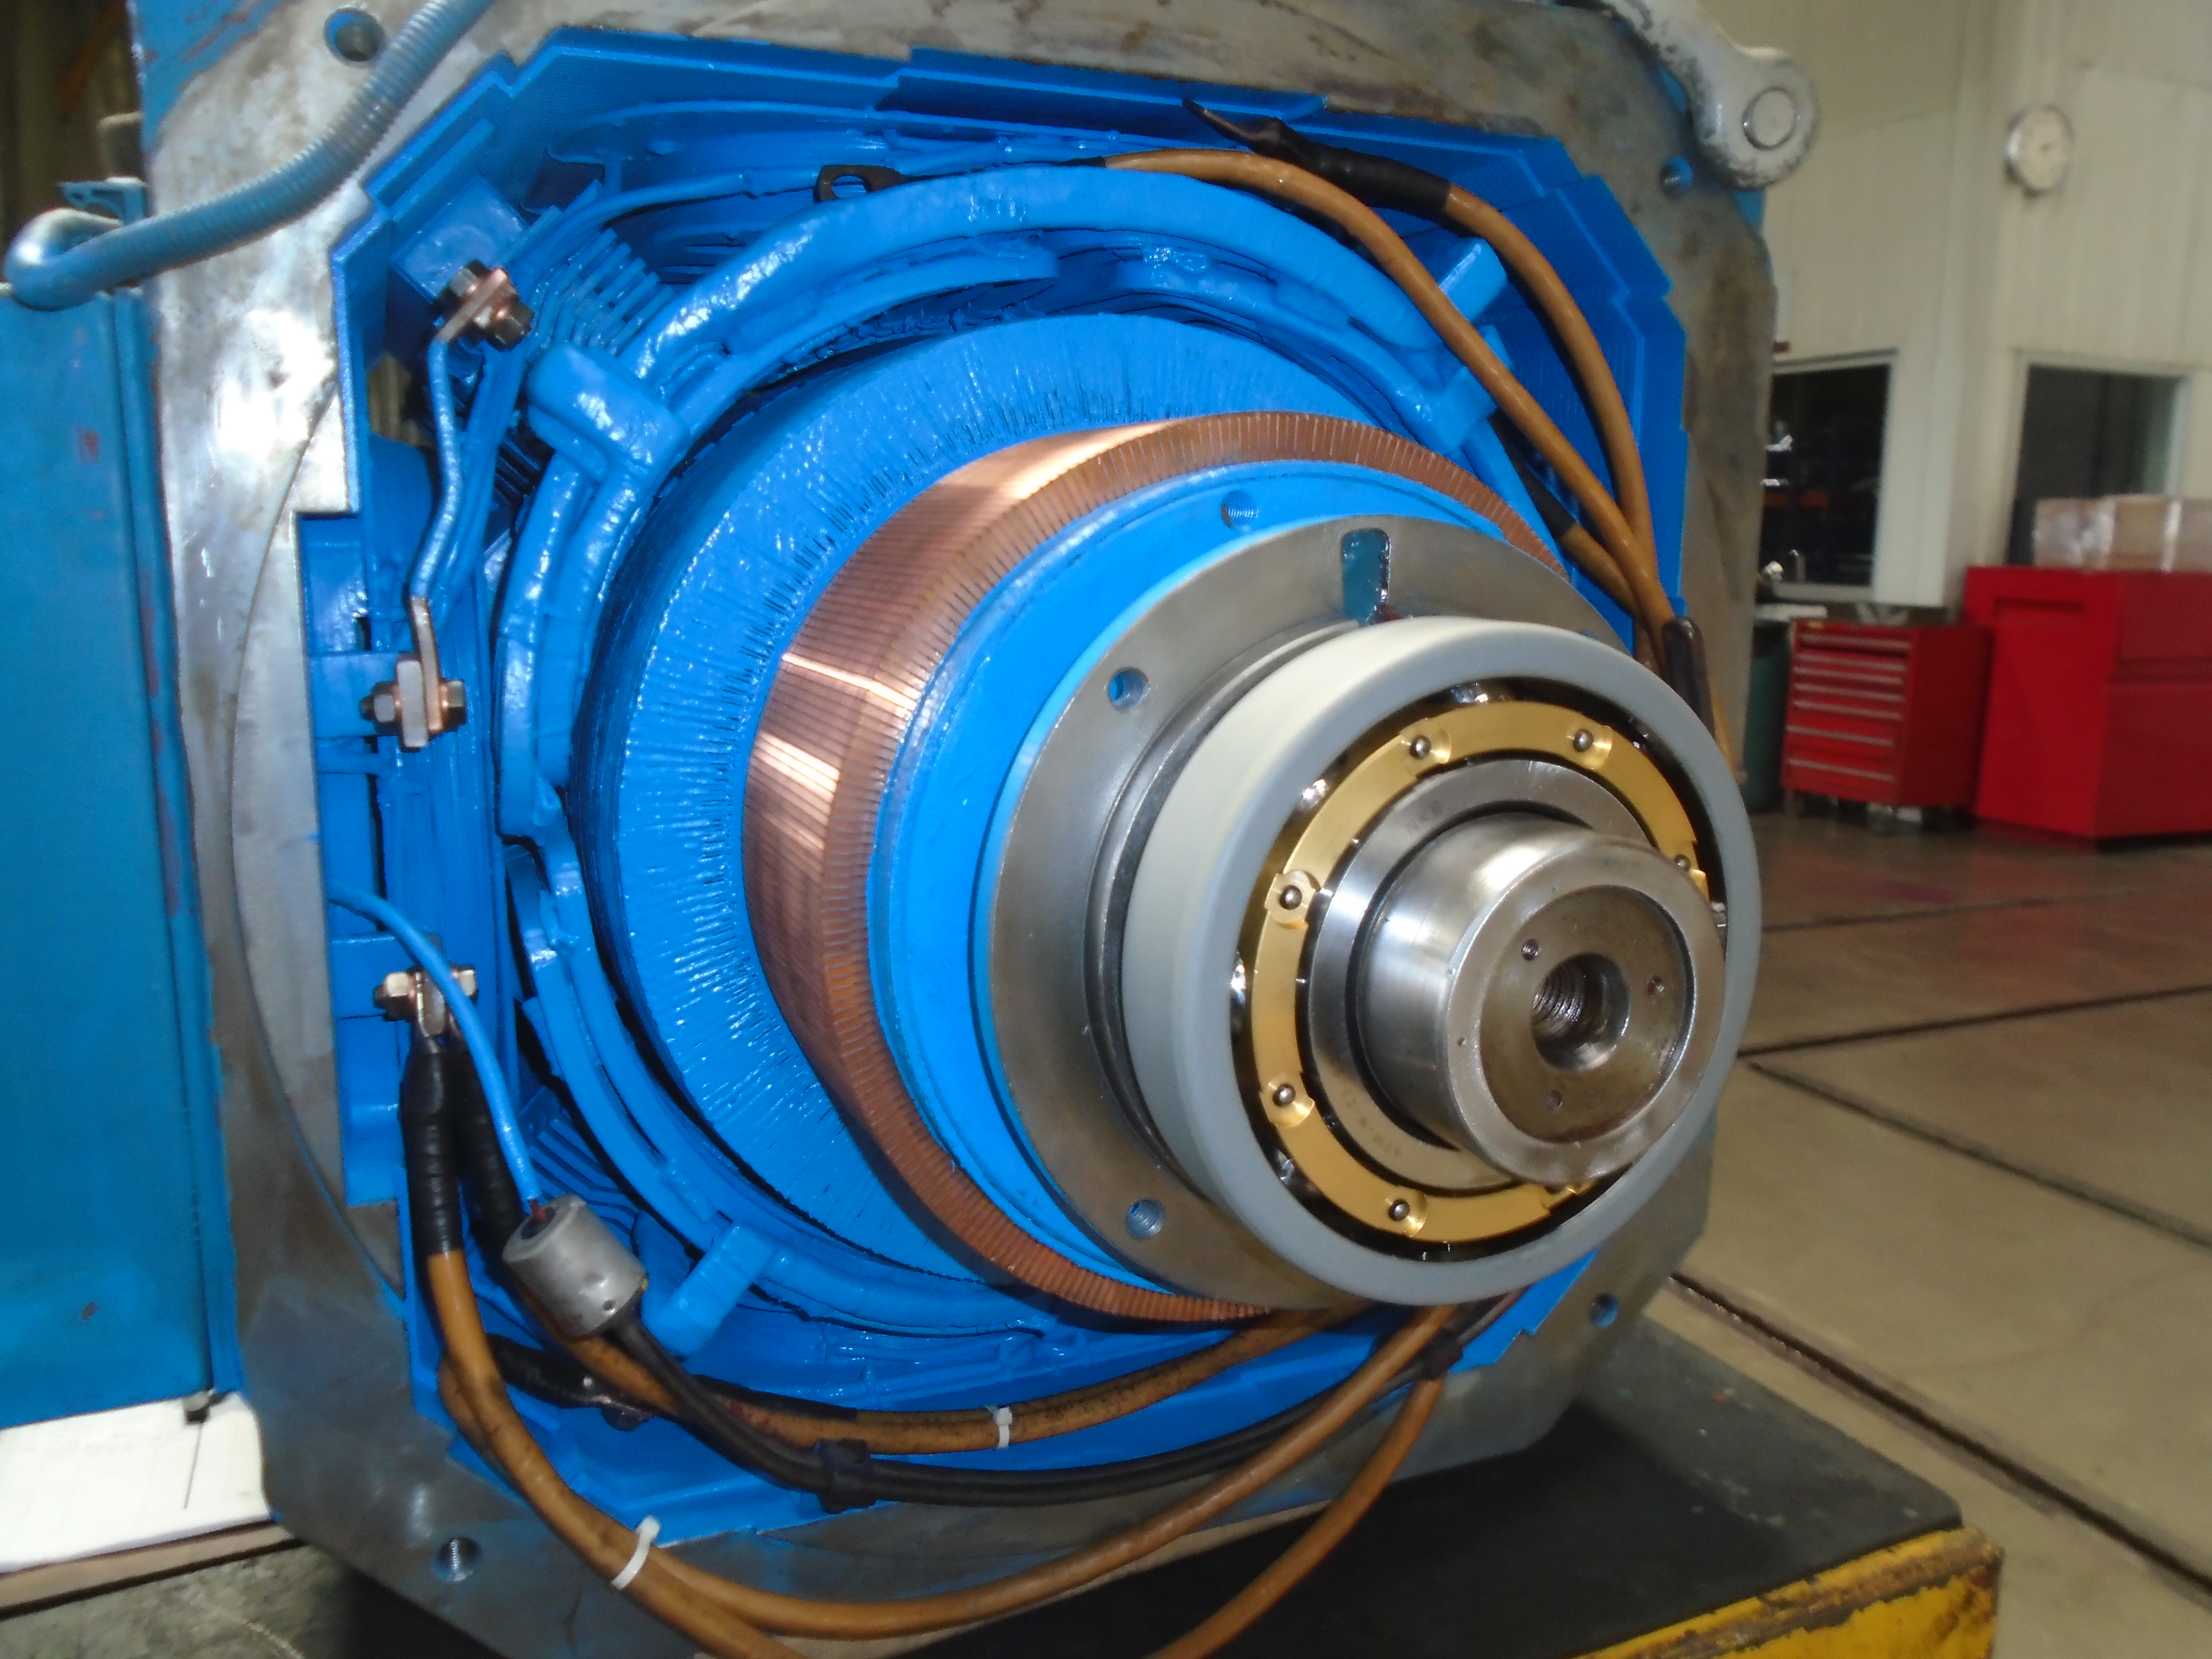 Nuestro proceso de Mantenimiento Mayor en Motores DC considera la extracción del Banding Tape en el rotor